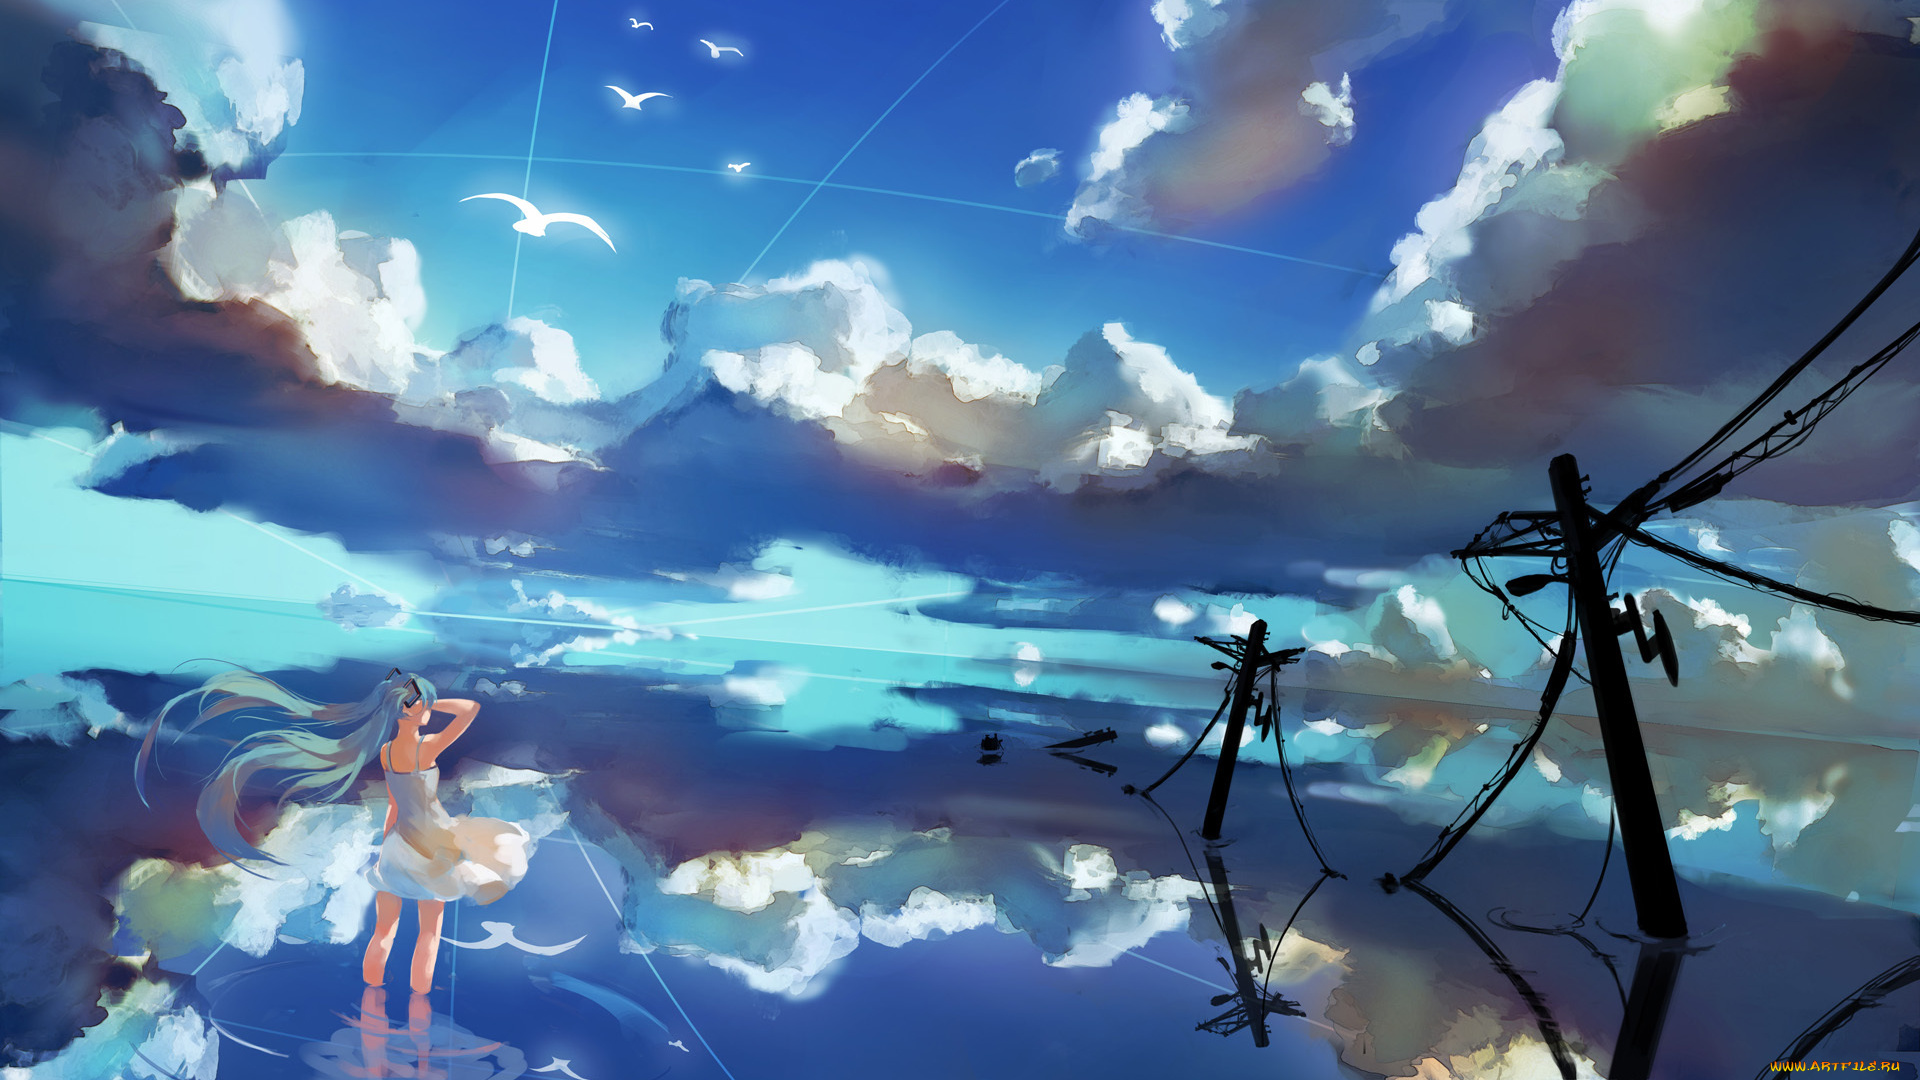 аниме, vocaloid, отражение, облака, небо, hatsune, miku, провода, лэп, вода, спиной, девушка, птицы, yaozhiligenius, арт